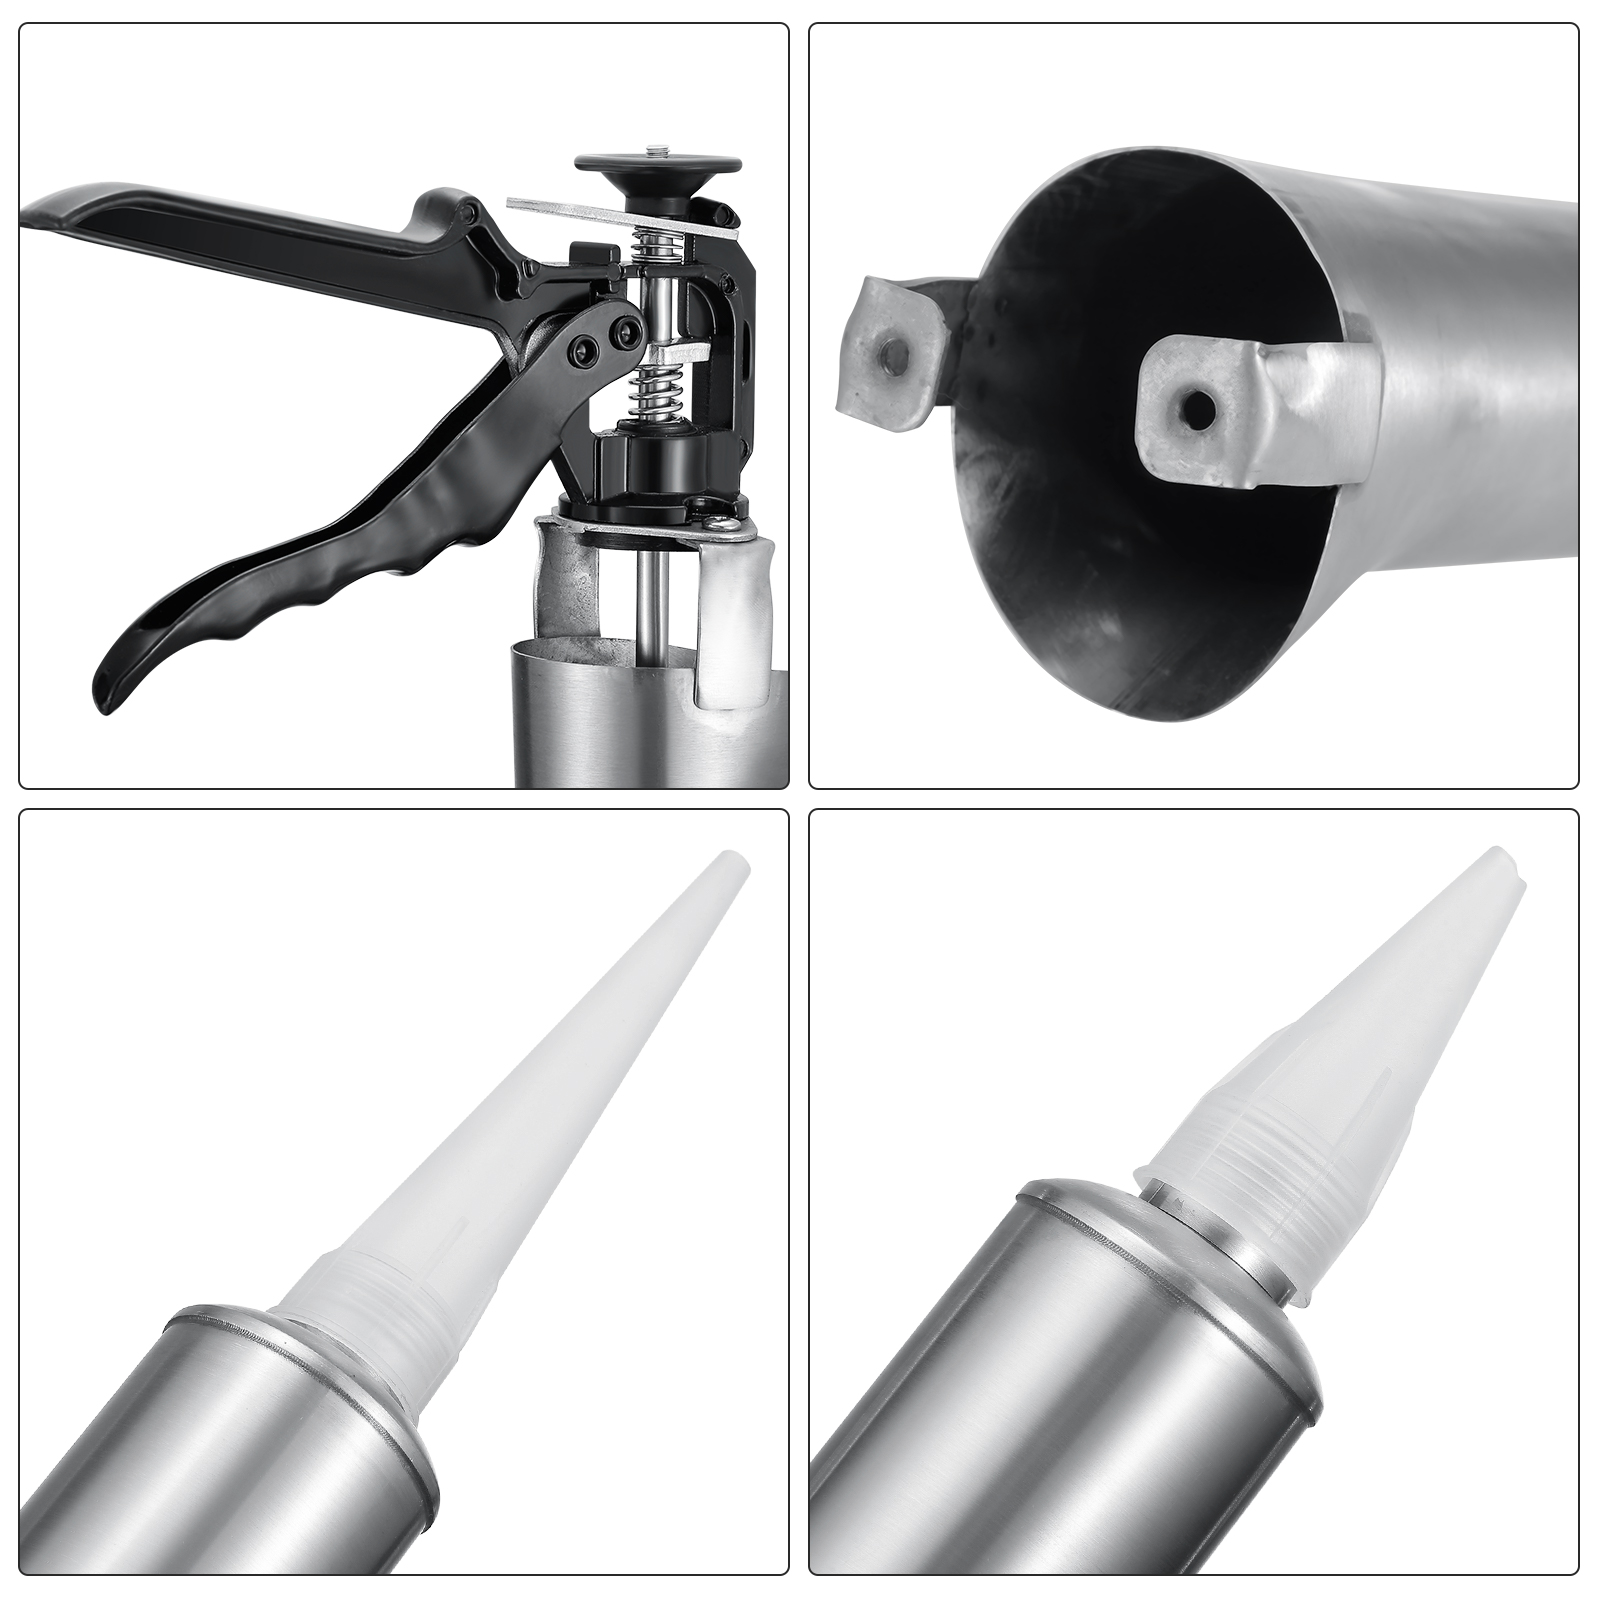 Stainless Steel Mortar Syringe Joint Gun Sprayer Applicator Tool For ...